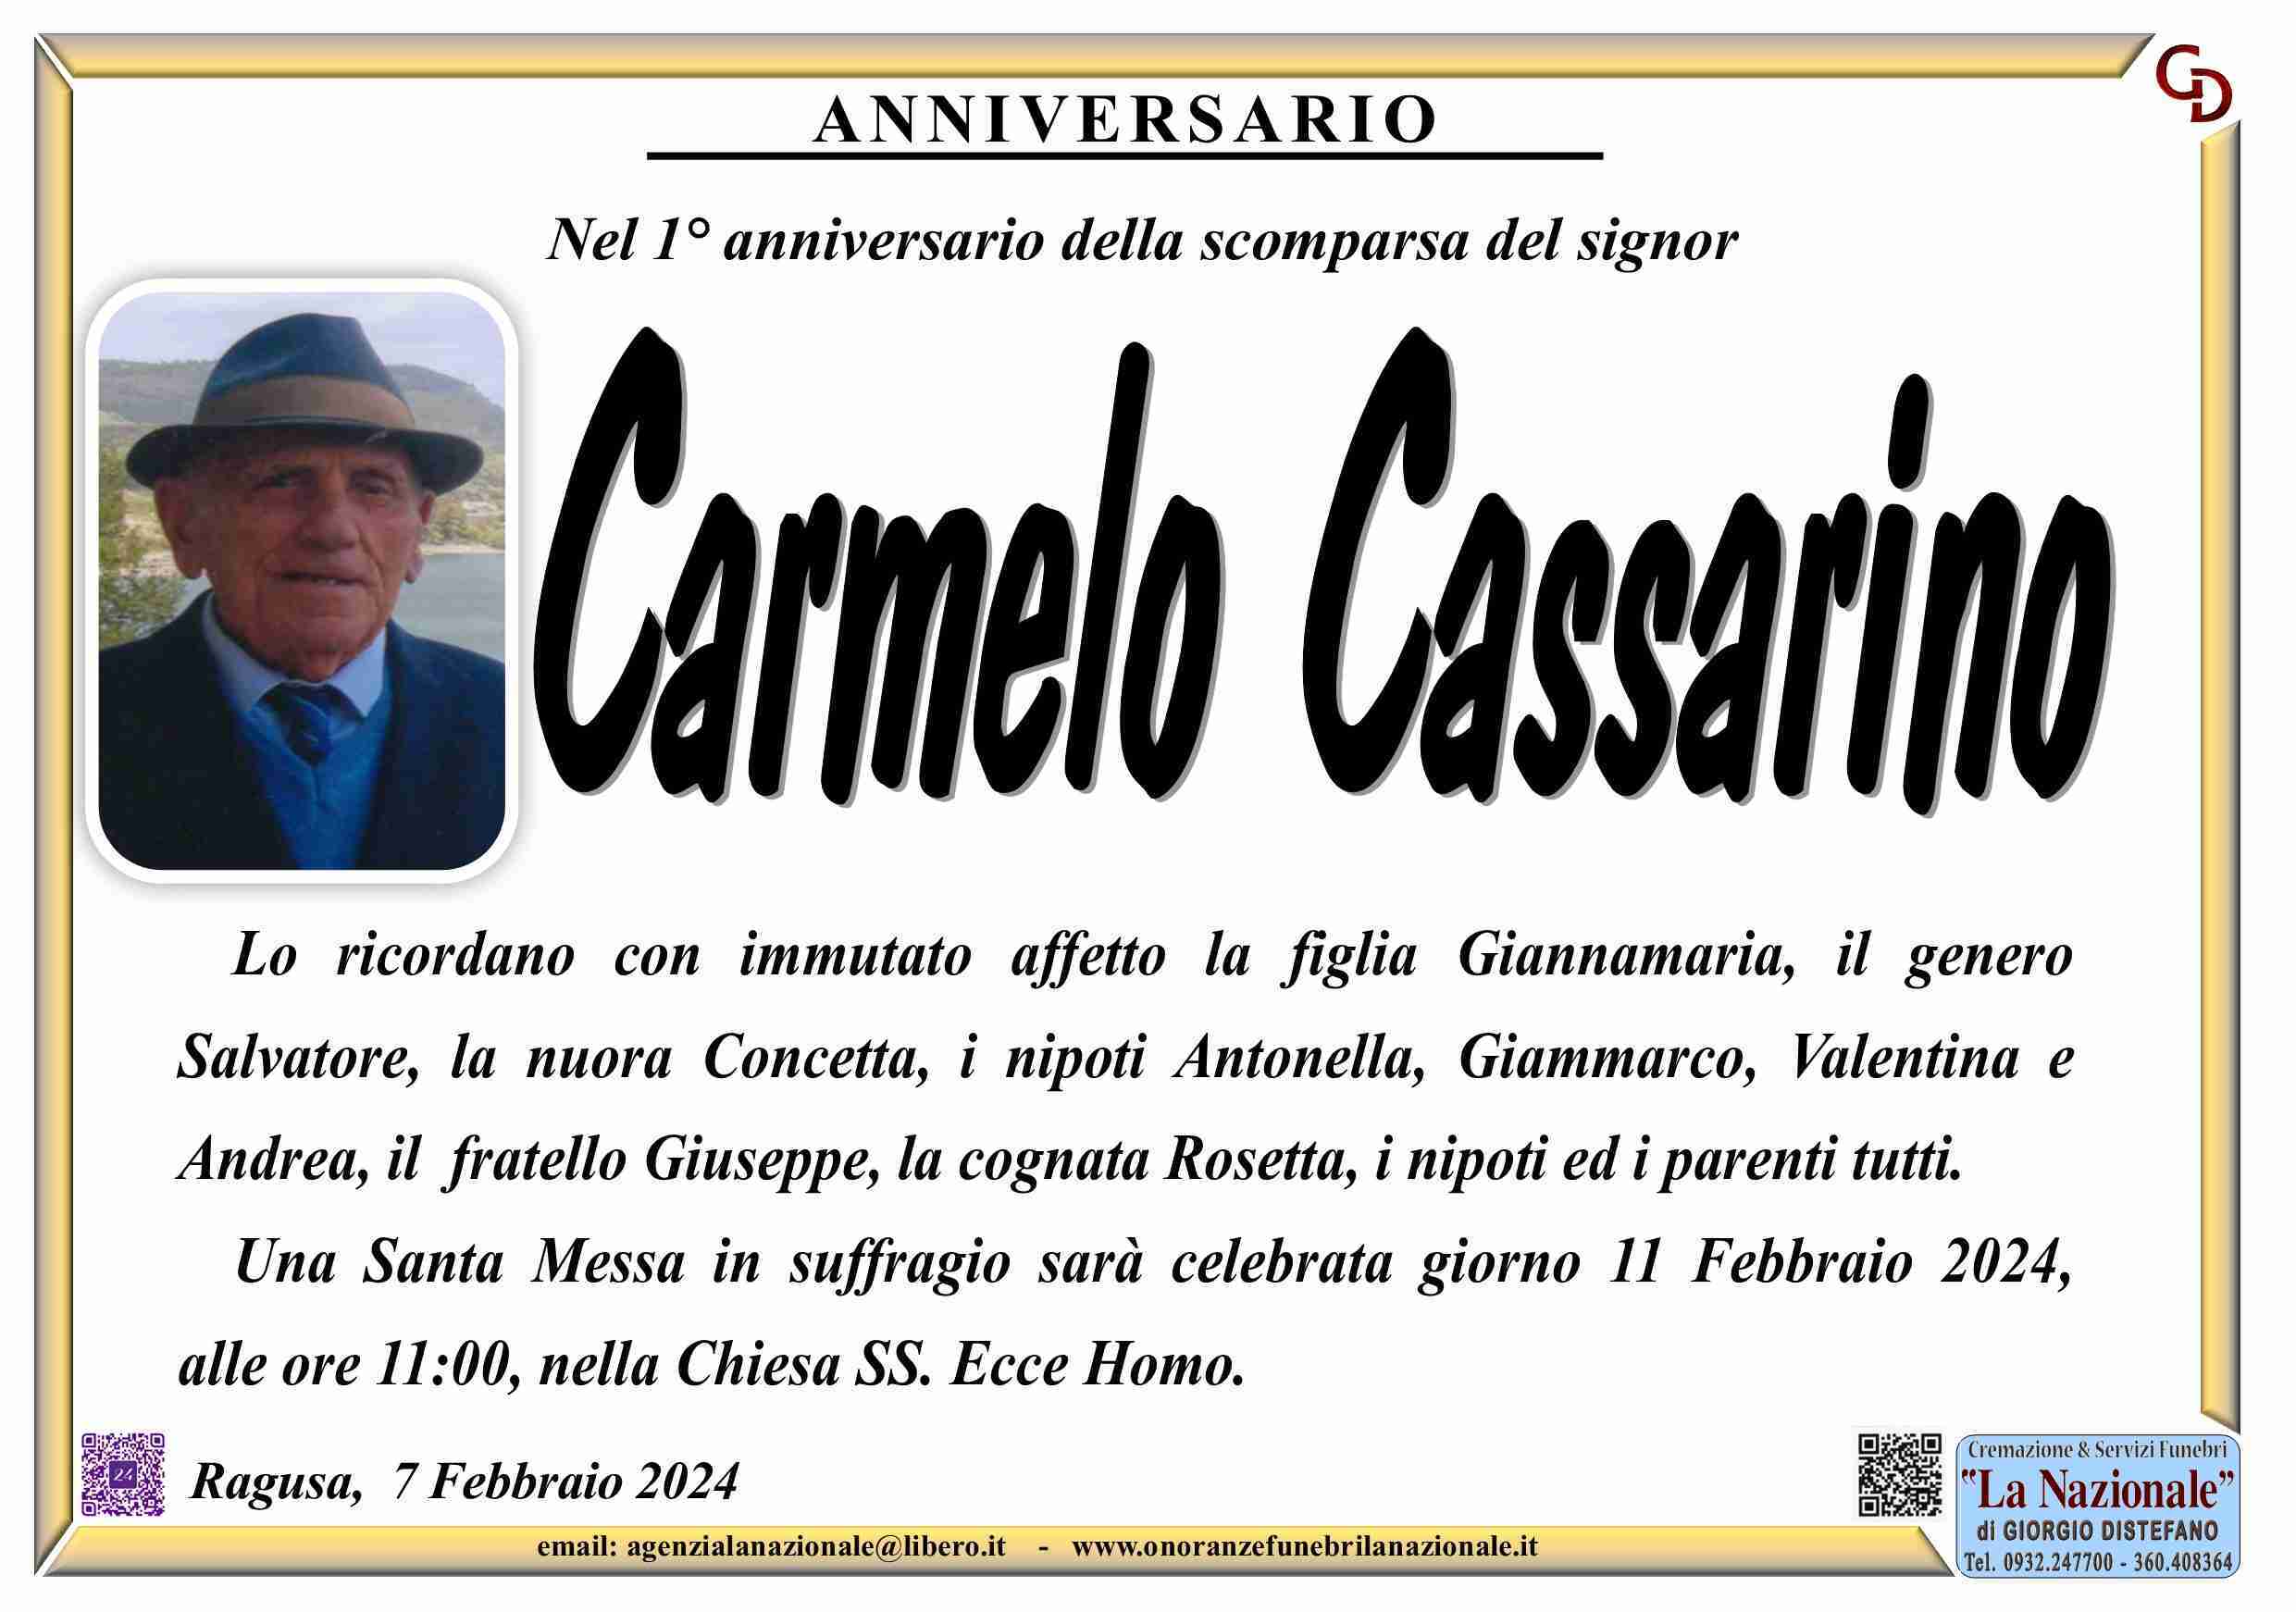 Carmelo Cassarino